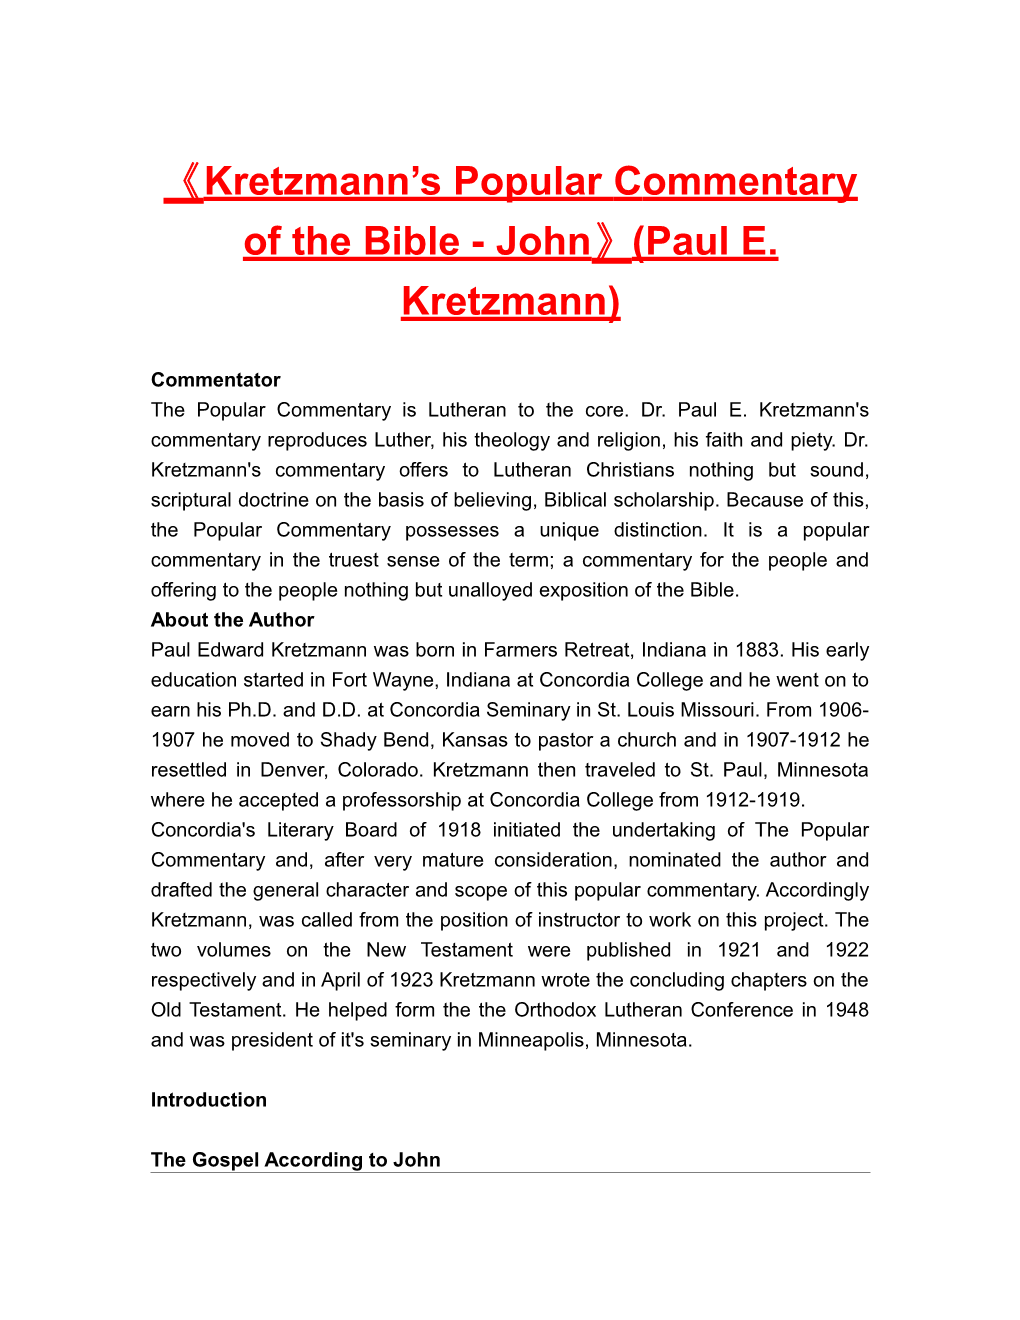 Kretzmann S Popular Commentary of the Bible - John (Paul E. Kretzmann)